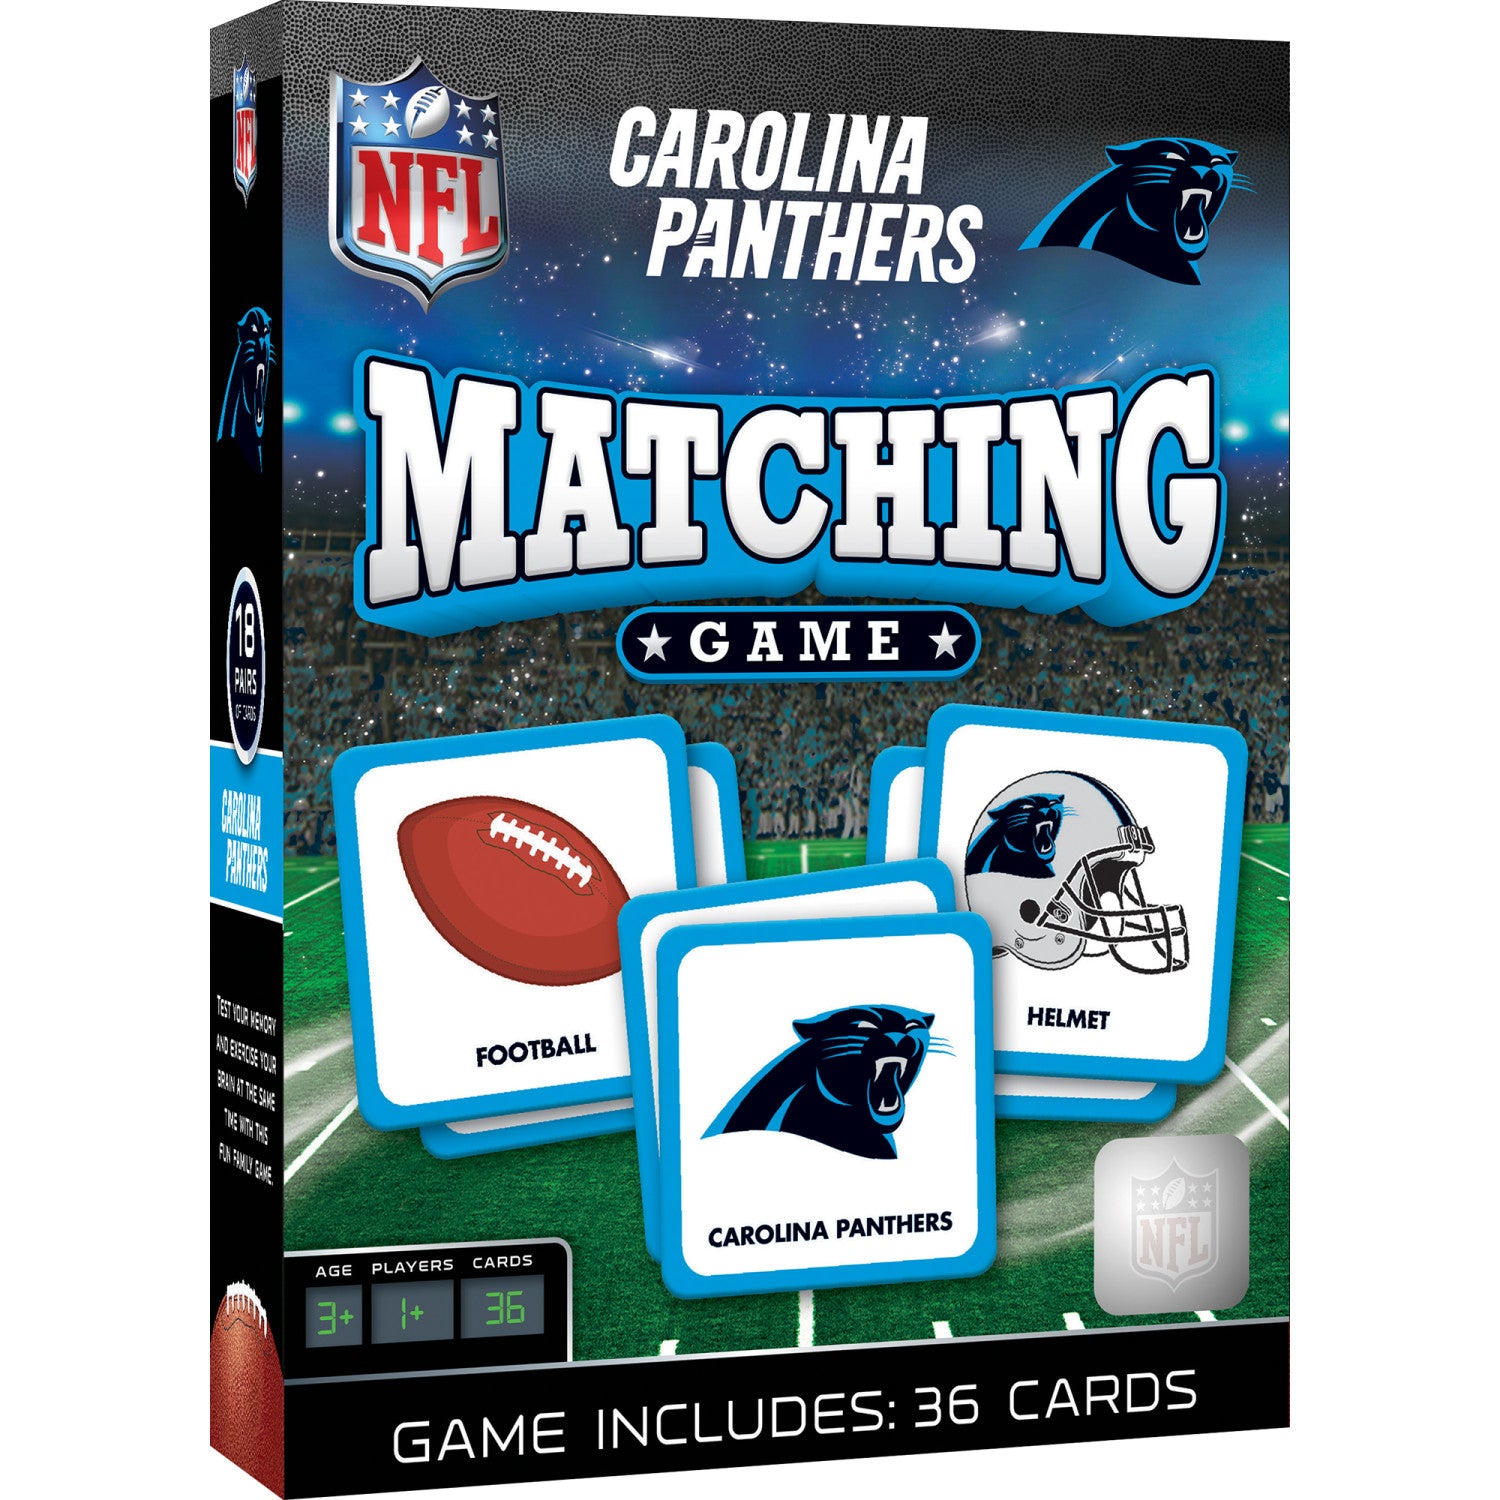 Carolina Panthers Matching Game